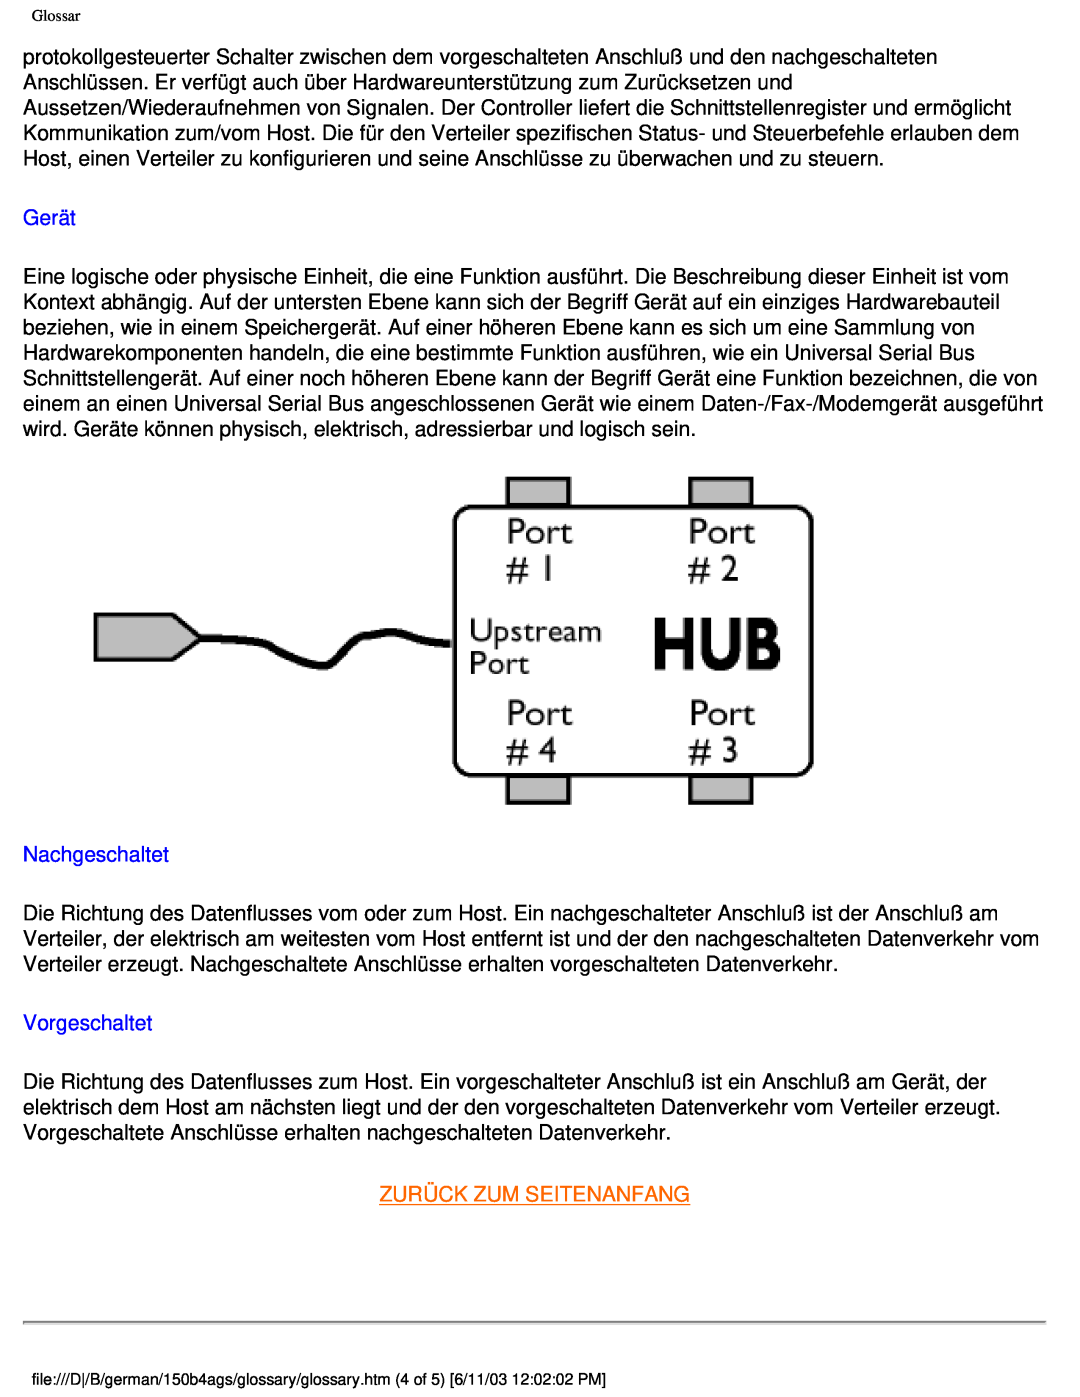 Philips 150B4AG user manual Gerät, Nachgeschaltet, Vorgeschaltet, Zurück Zum Seitenanfang 